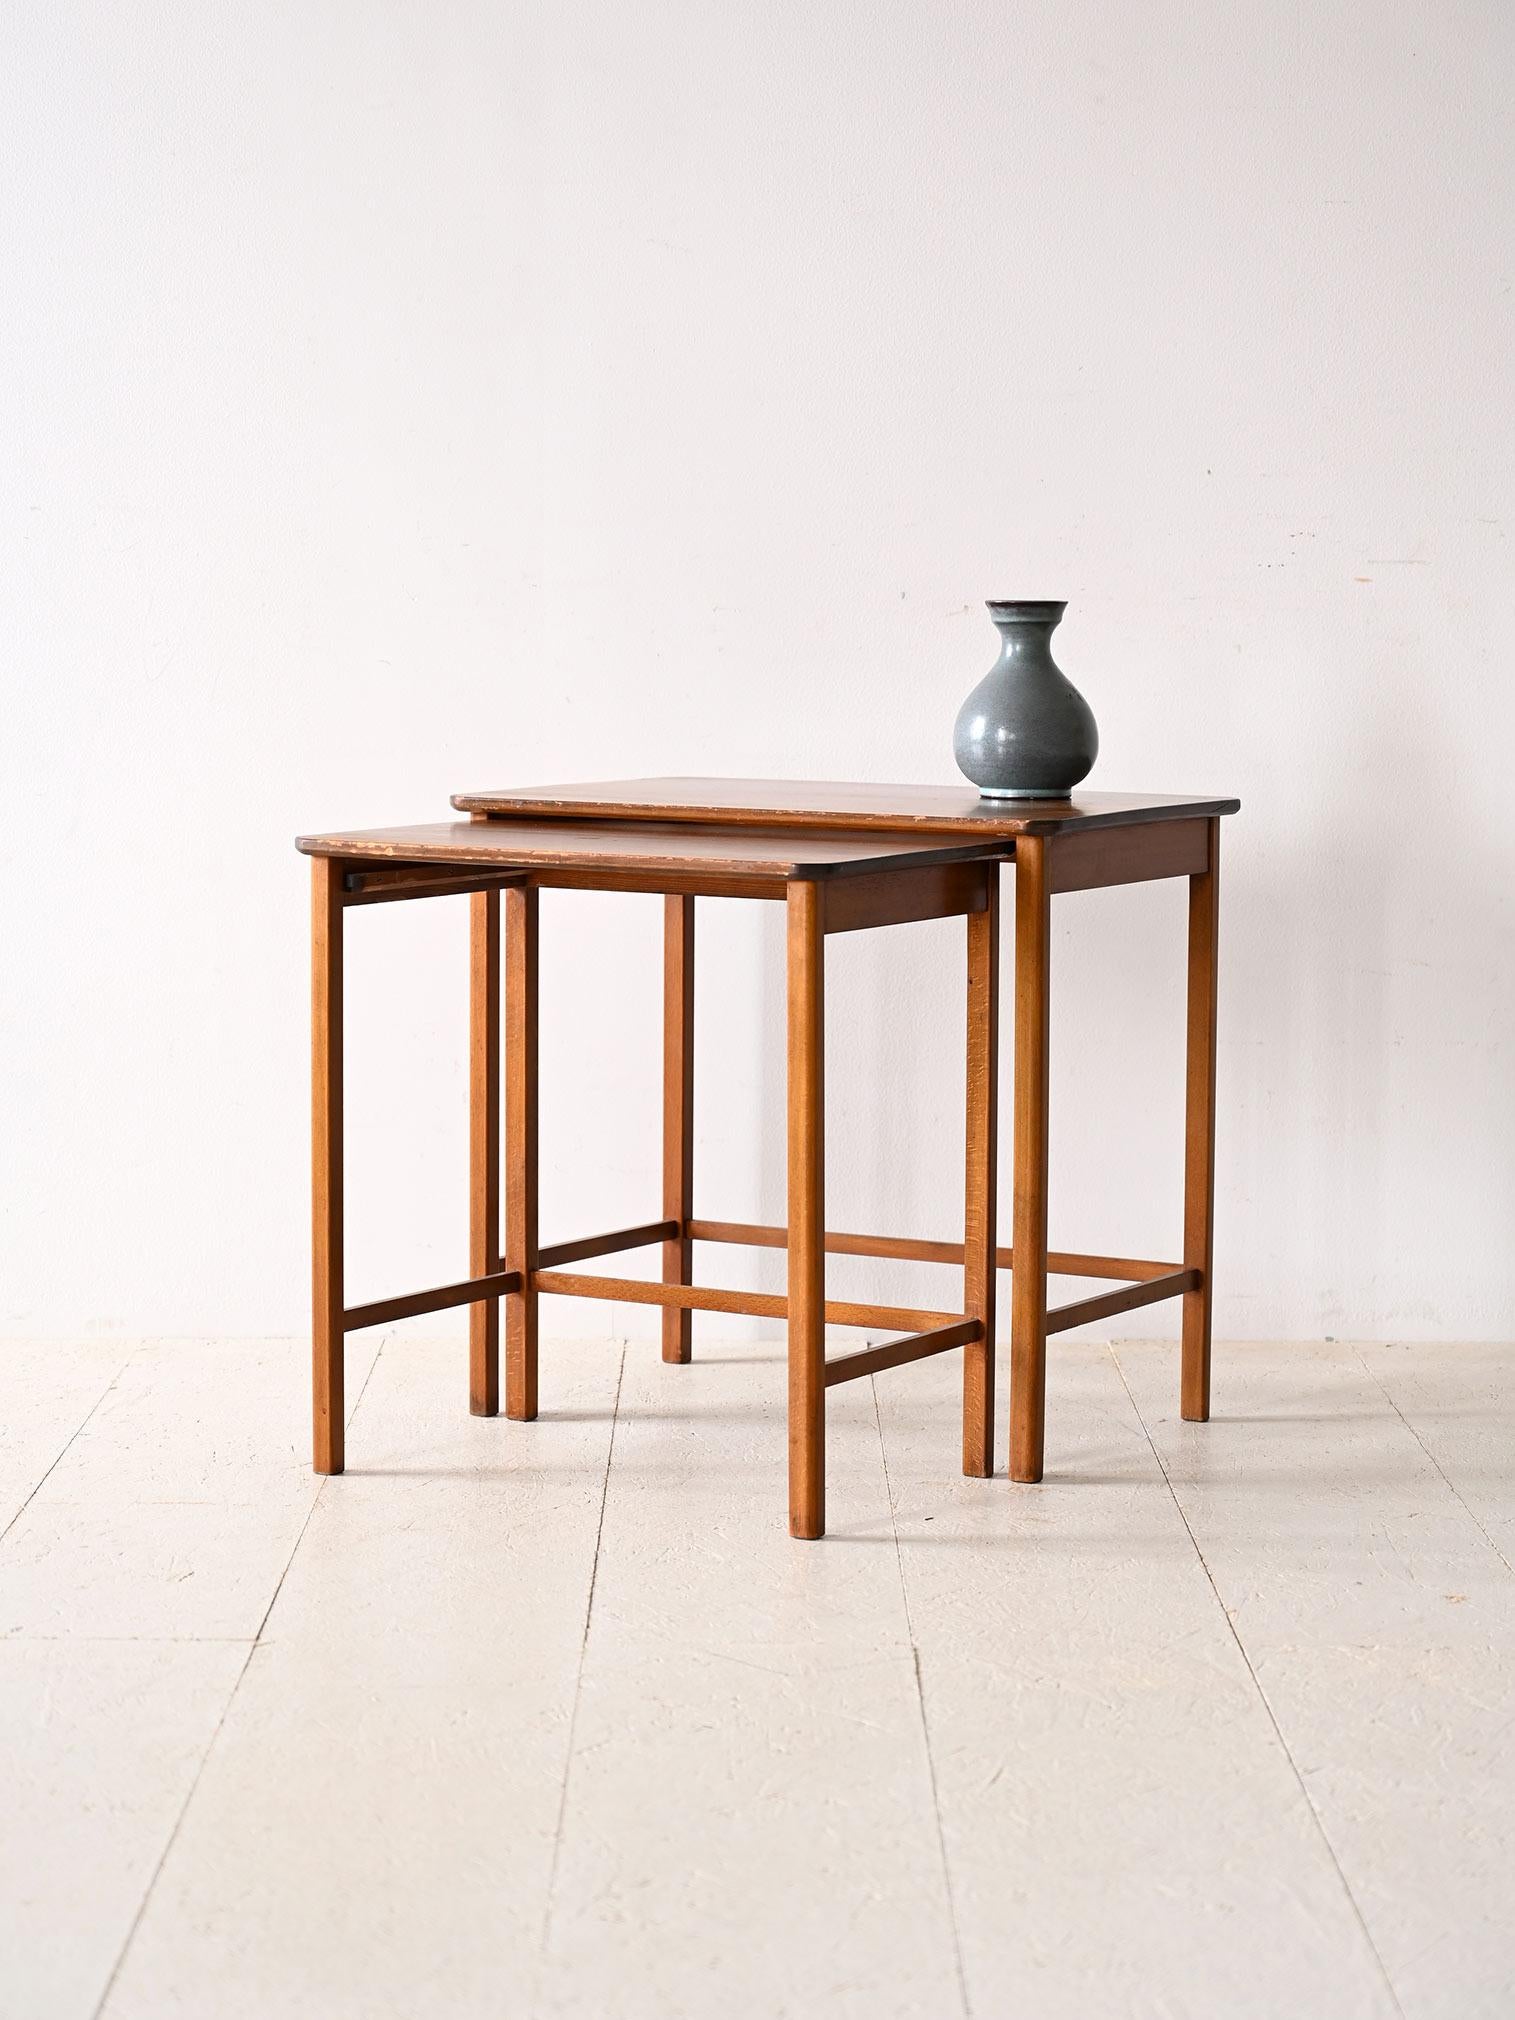 Ensemble de deux tables gigognes des années 1960.

Ces deux petites tables sont idéales pour ceux qui disposent de peu d'espace à la maison mais qui ne veulent pas renoncer à un plateau pratique et agréable à l'œil.
Il se compose d'un simple plateau